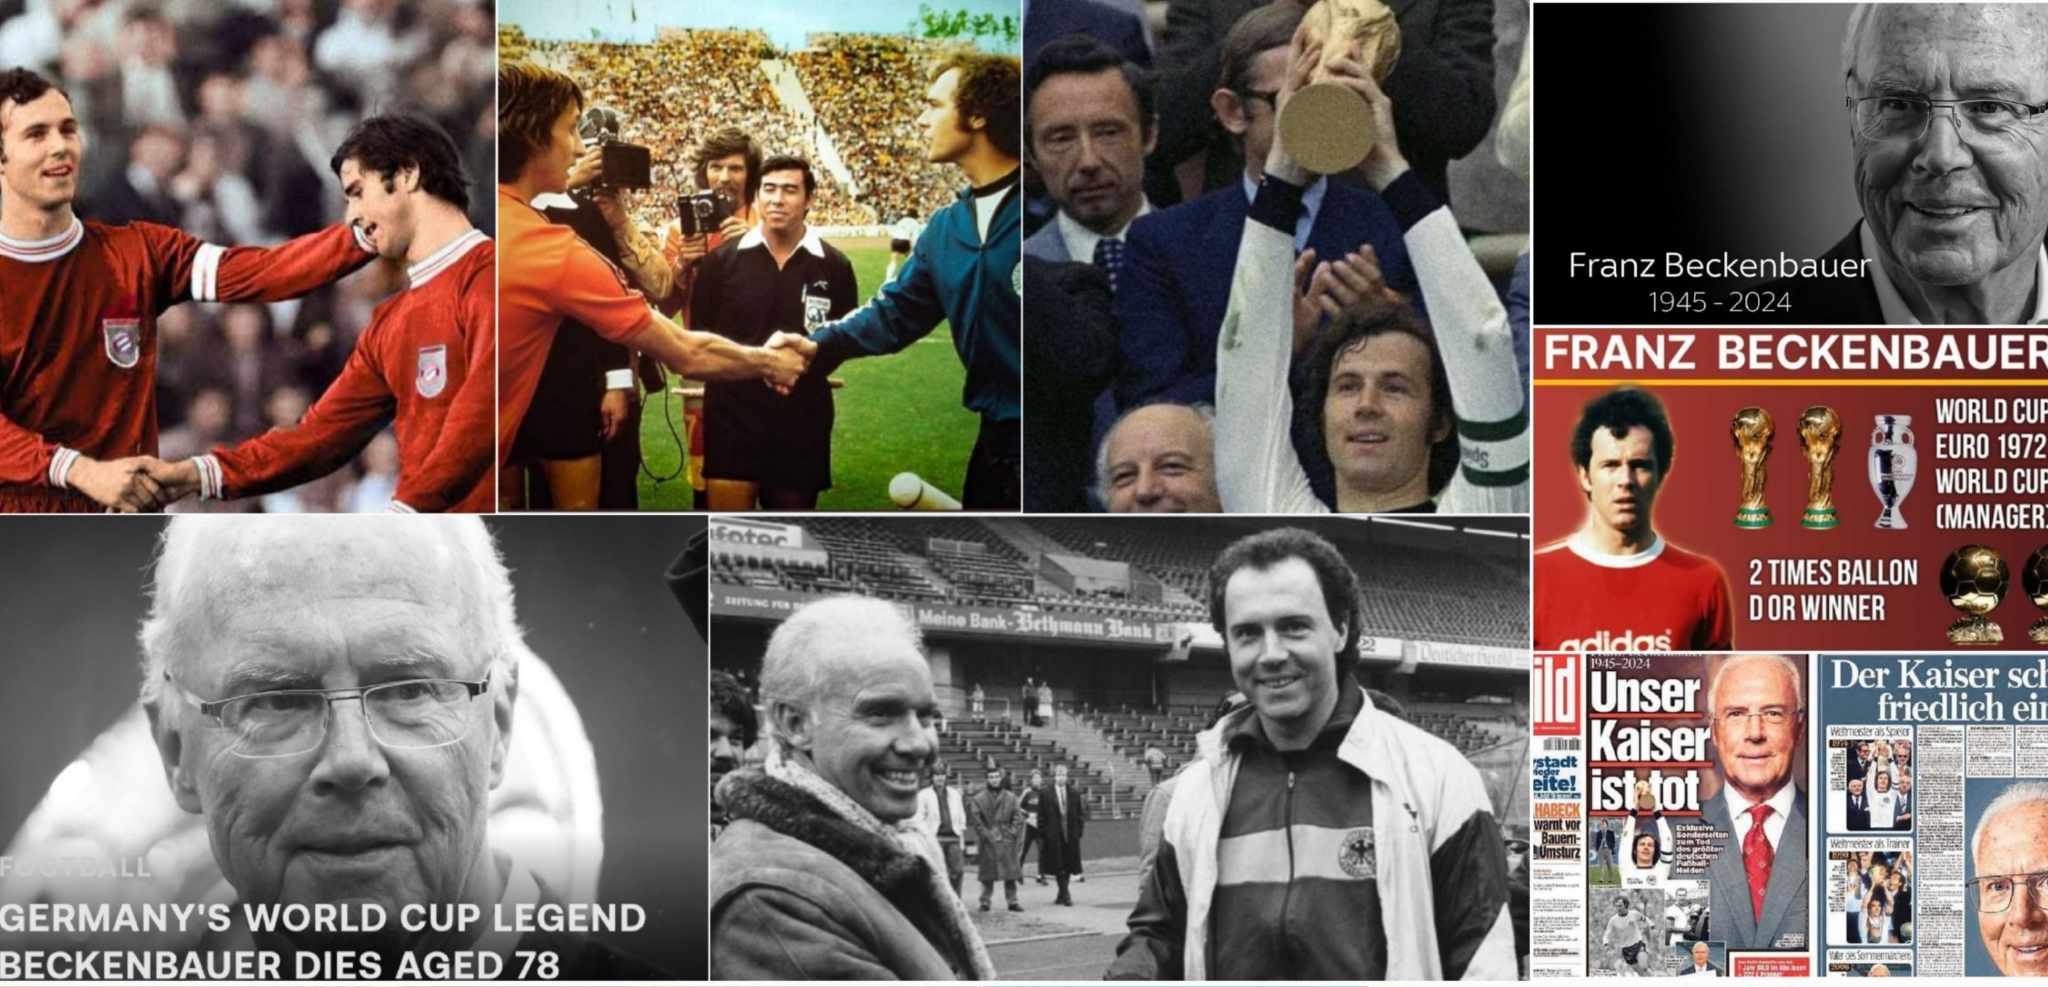 Franz Beckenbauer collage